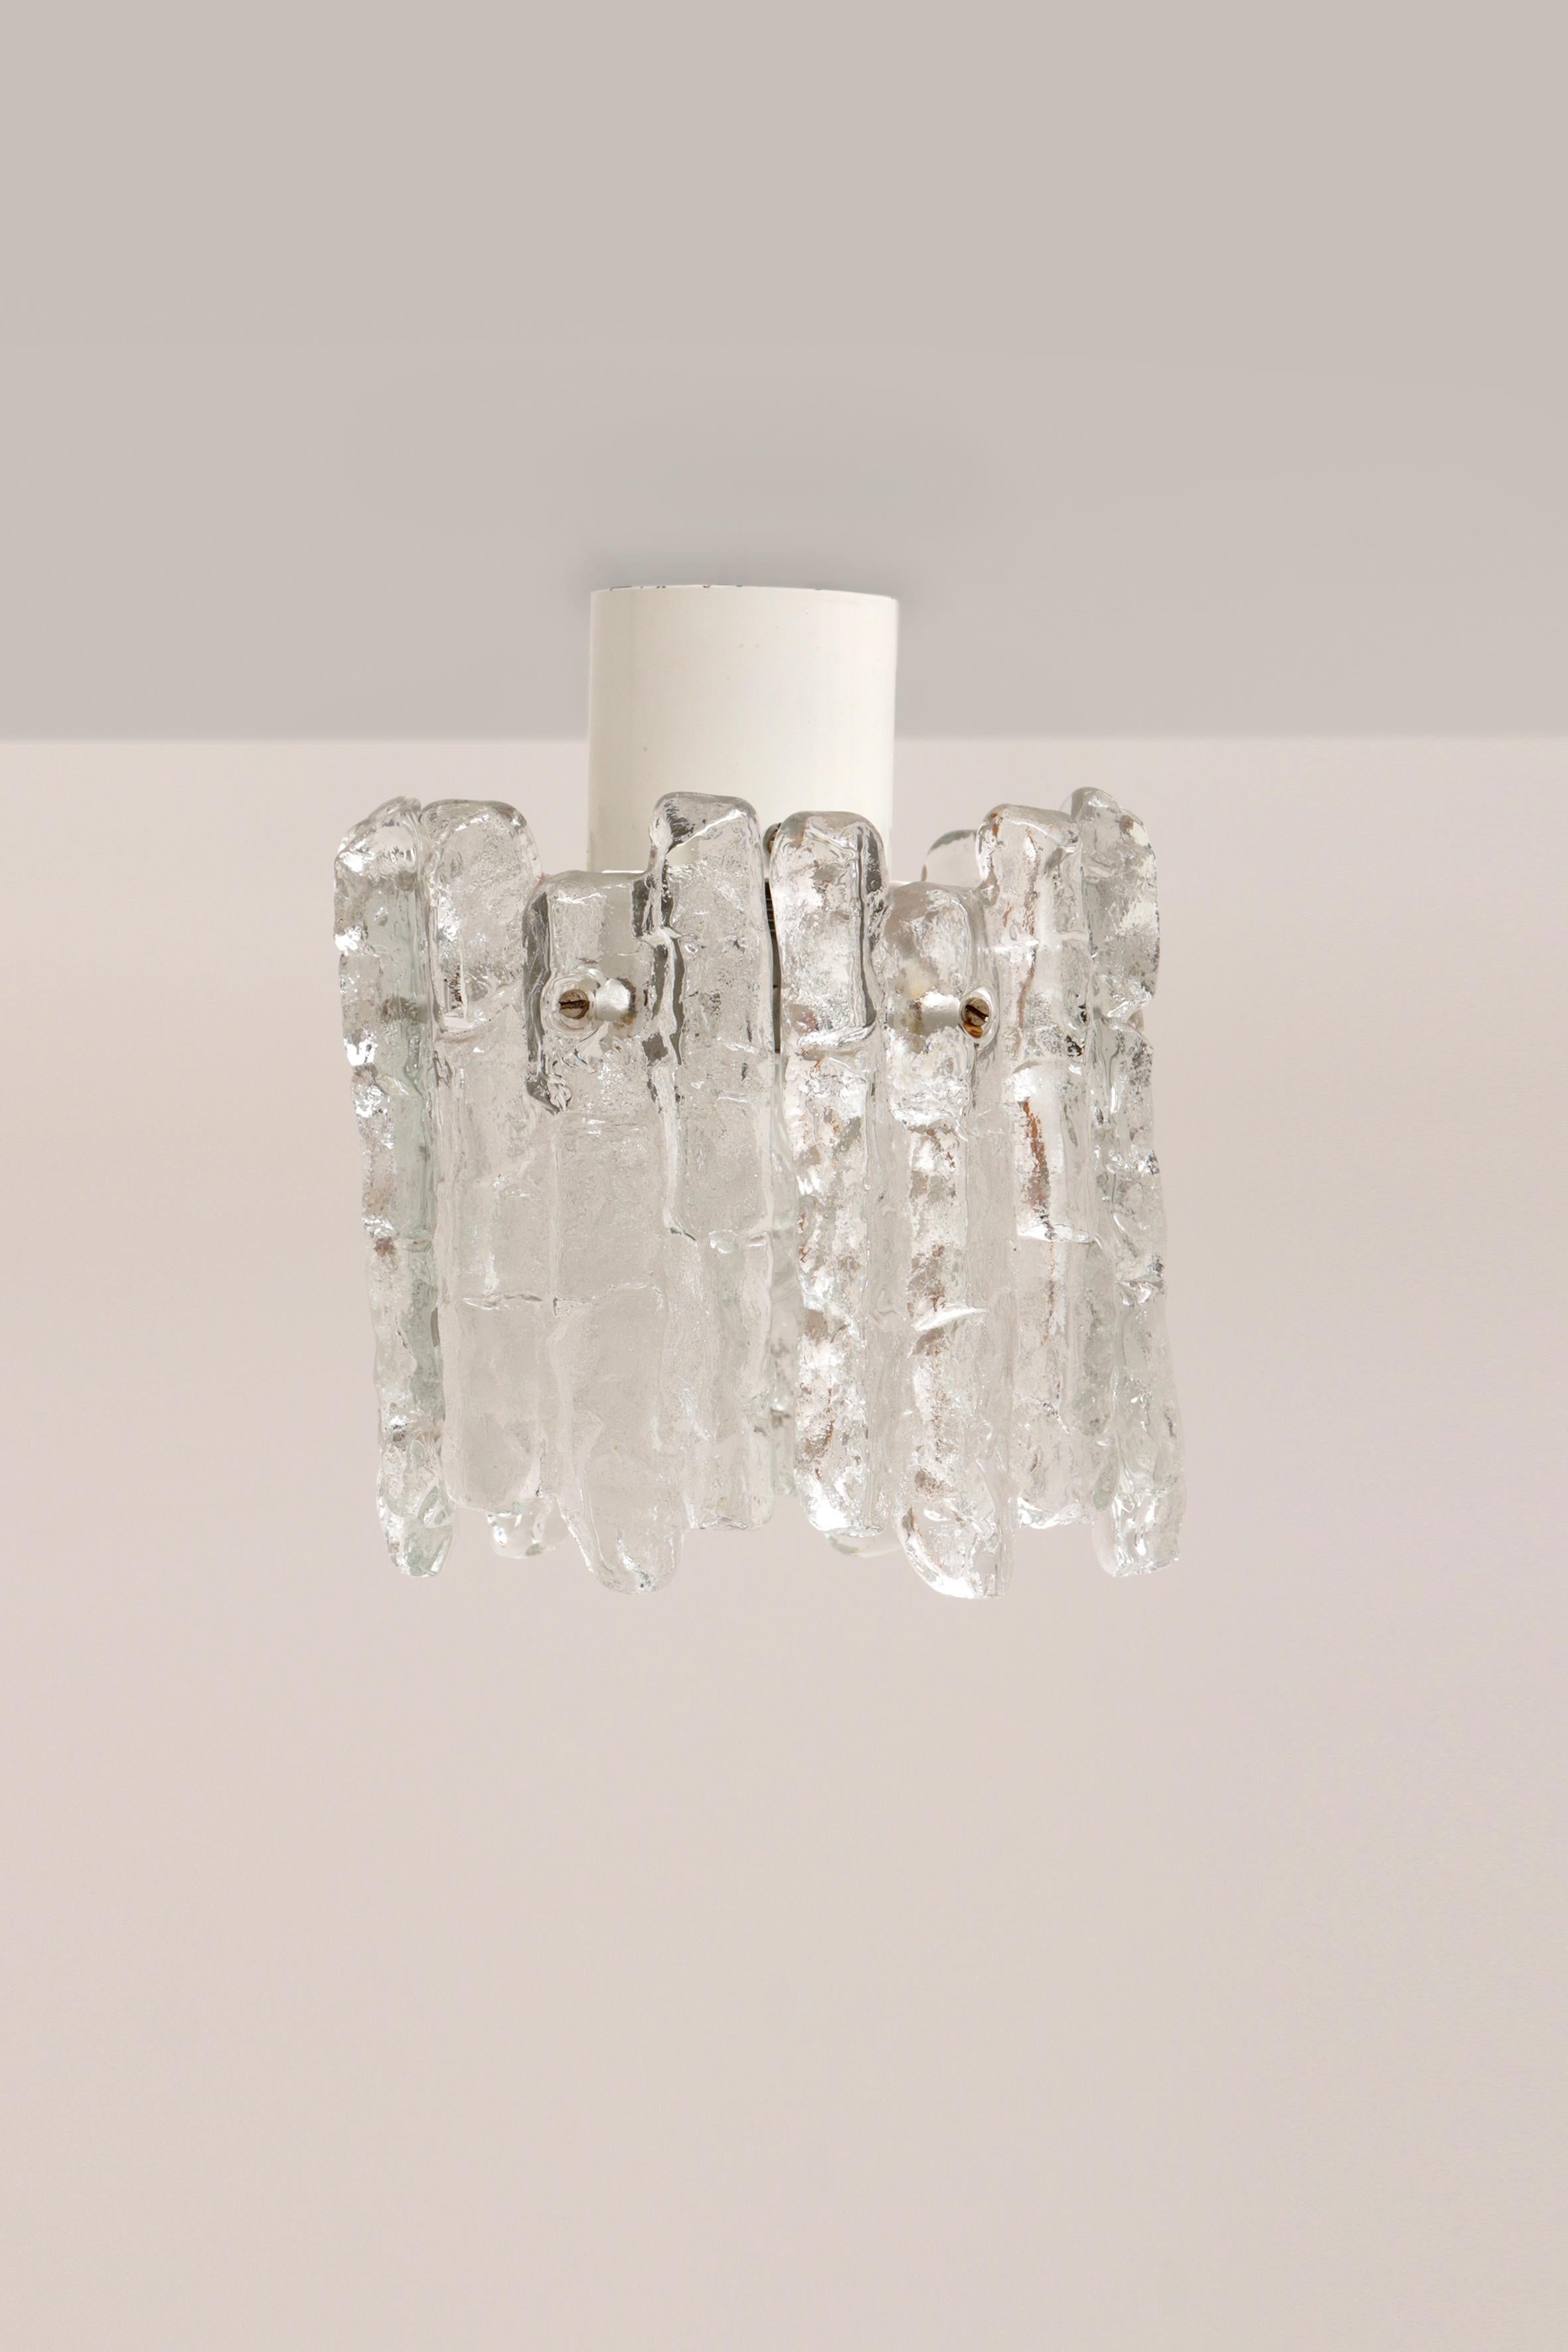 Eine schöne Hängelampe von Kalmar by Franken KG.

Dies ist ein schönes Modell Hängelampe. Die besonderen Formen im Design verleihen diesen Lampen ein ganz individuelles und einzigartiges Aussehen. Die Lampe besteht aus 6 Murano-Glasscheiben.

Diese